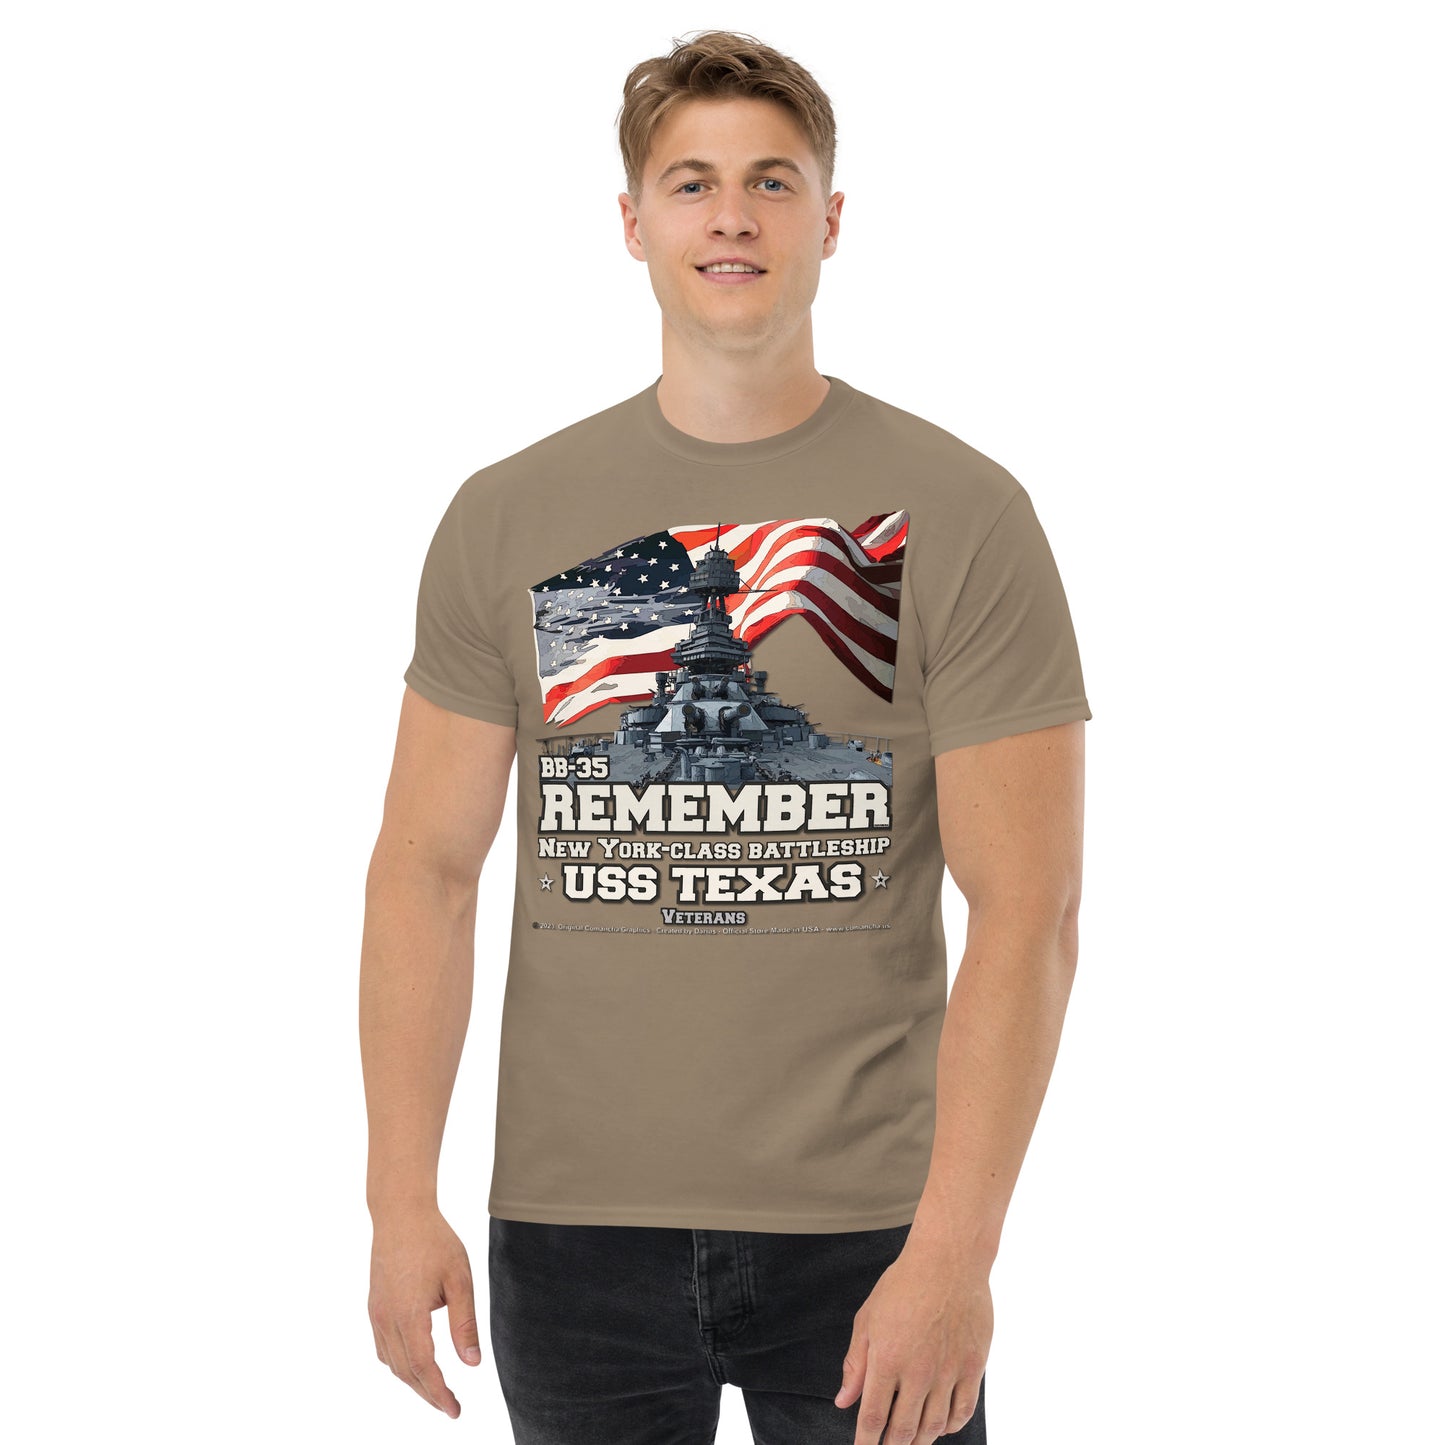 Remember USS TEXAS BB-35 Battleship t-shirt